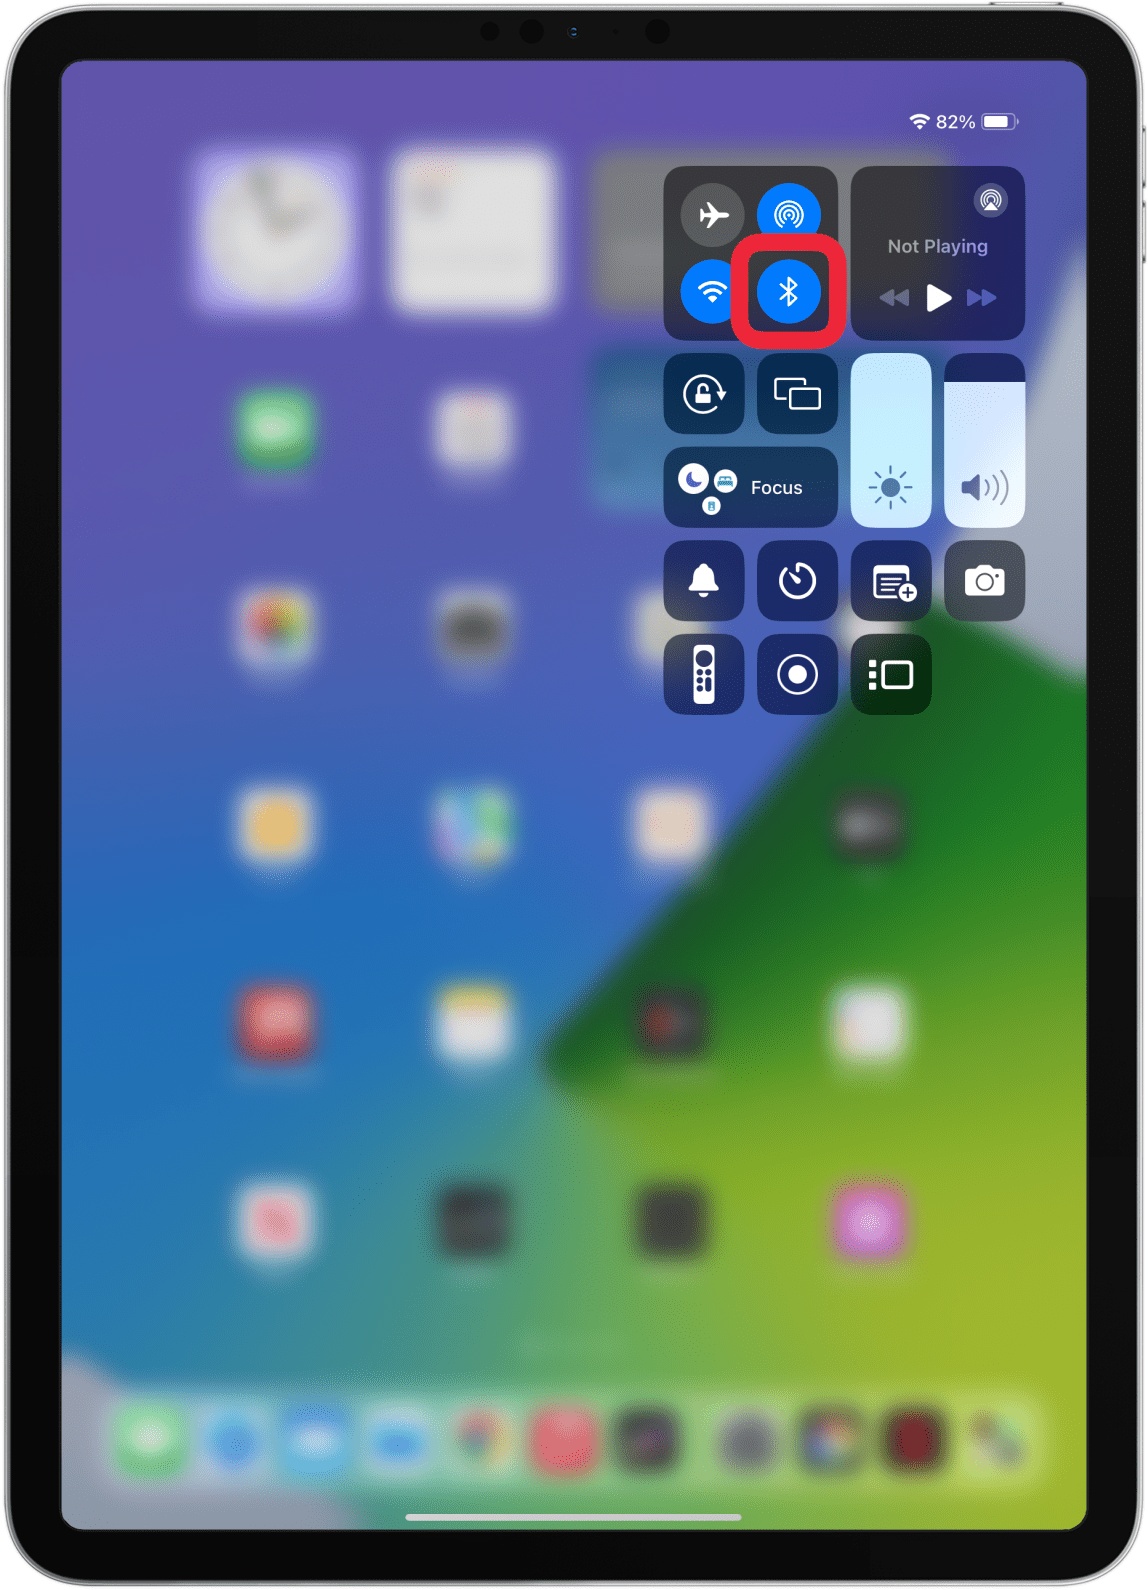 S'il s'agit d'un clavier Bluetooth, assurez-vous que le Bluetooth est activé sur votre iPad.